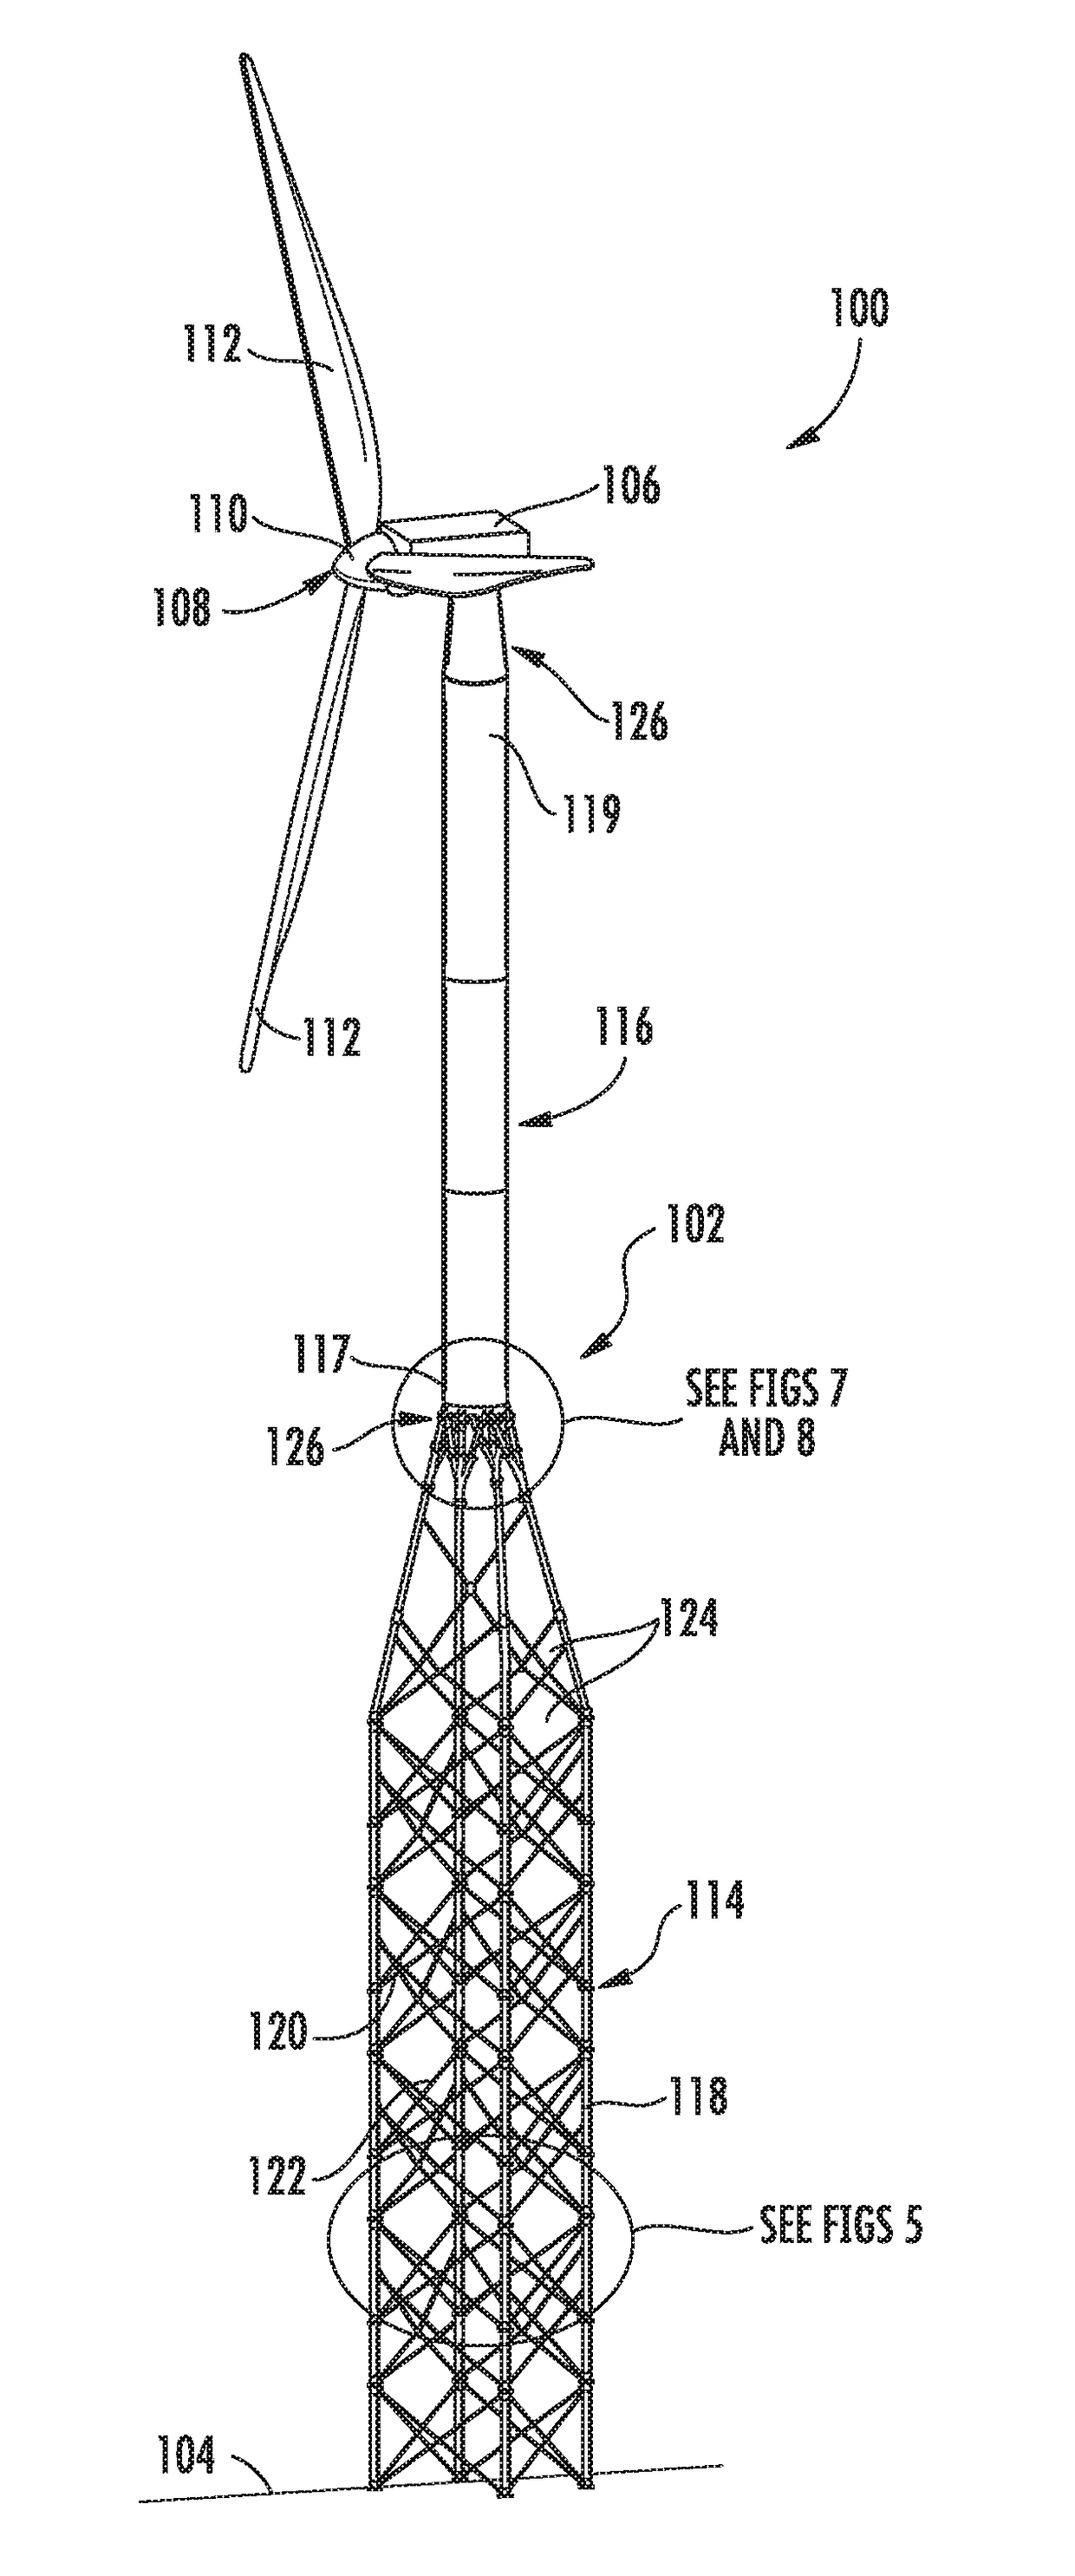 Hybrid tubular lattice tower assembly for a wind turbine